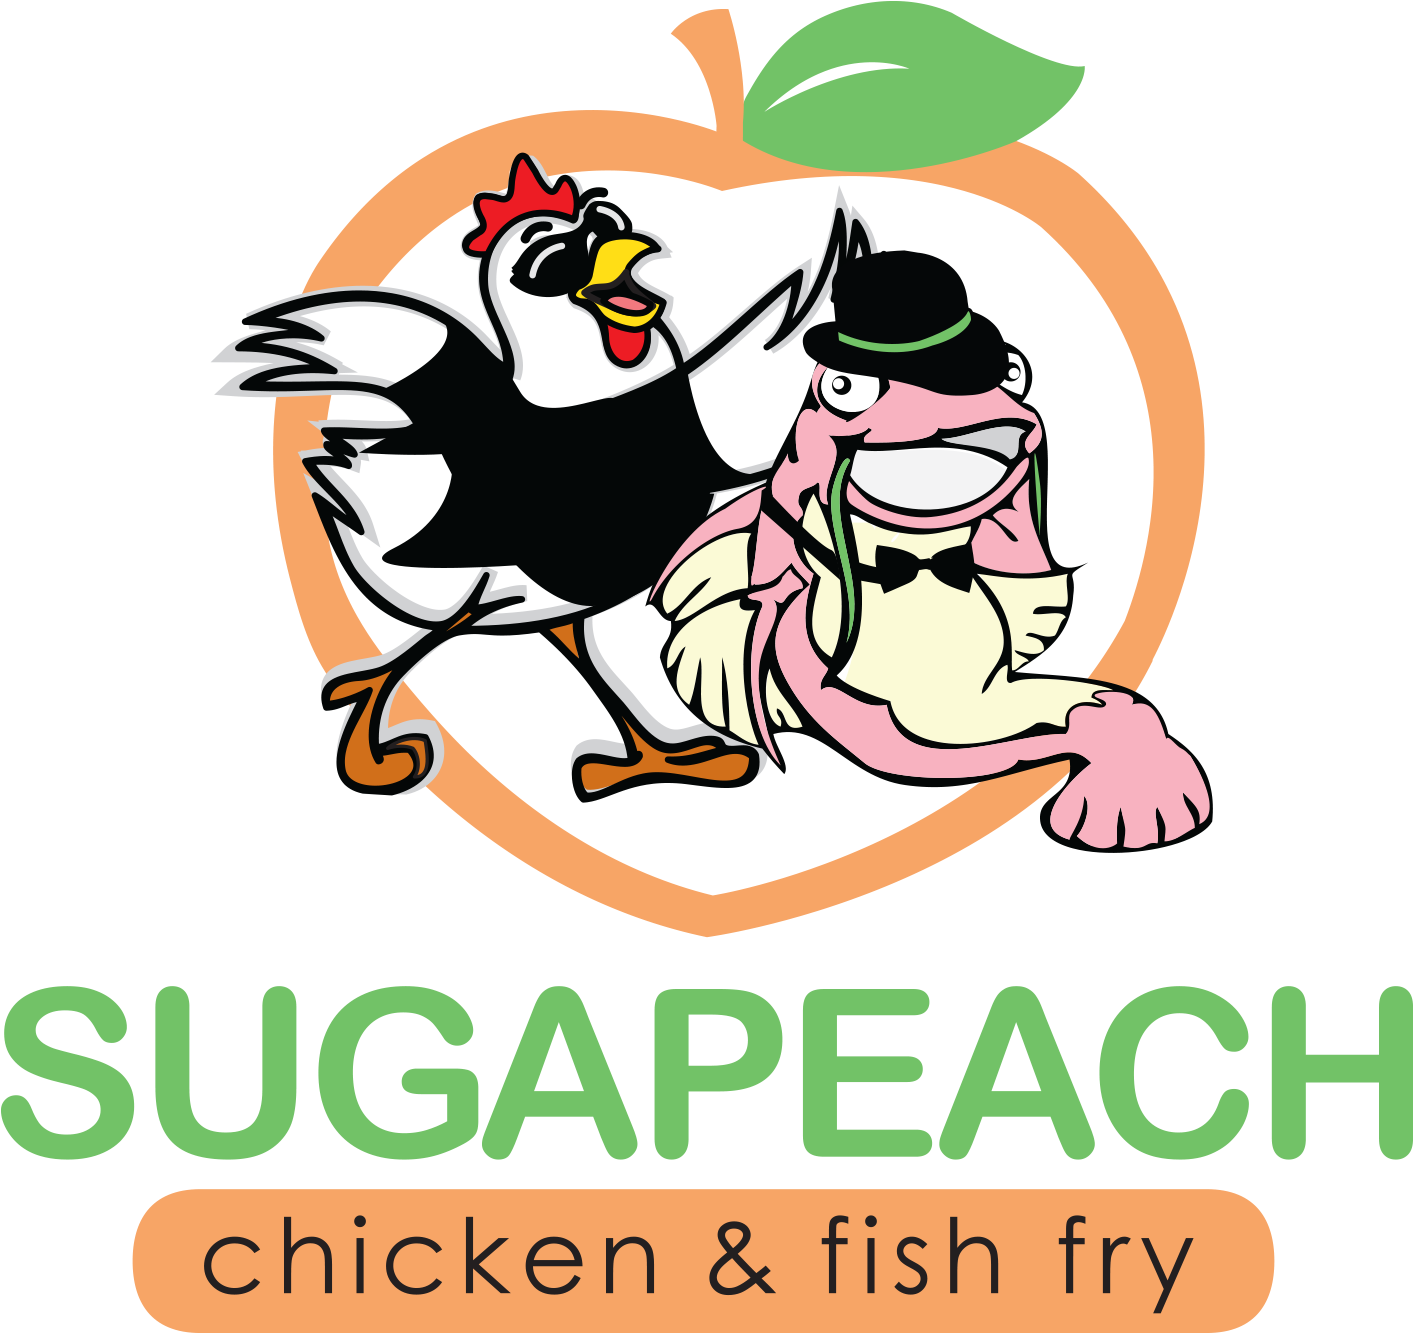 Sugapeach Chicken & Fish Fry - Sugapeach Chicken & Fish Fry (1500x1464)